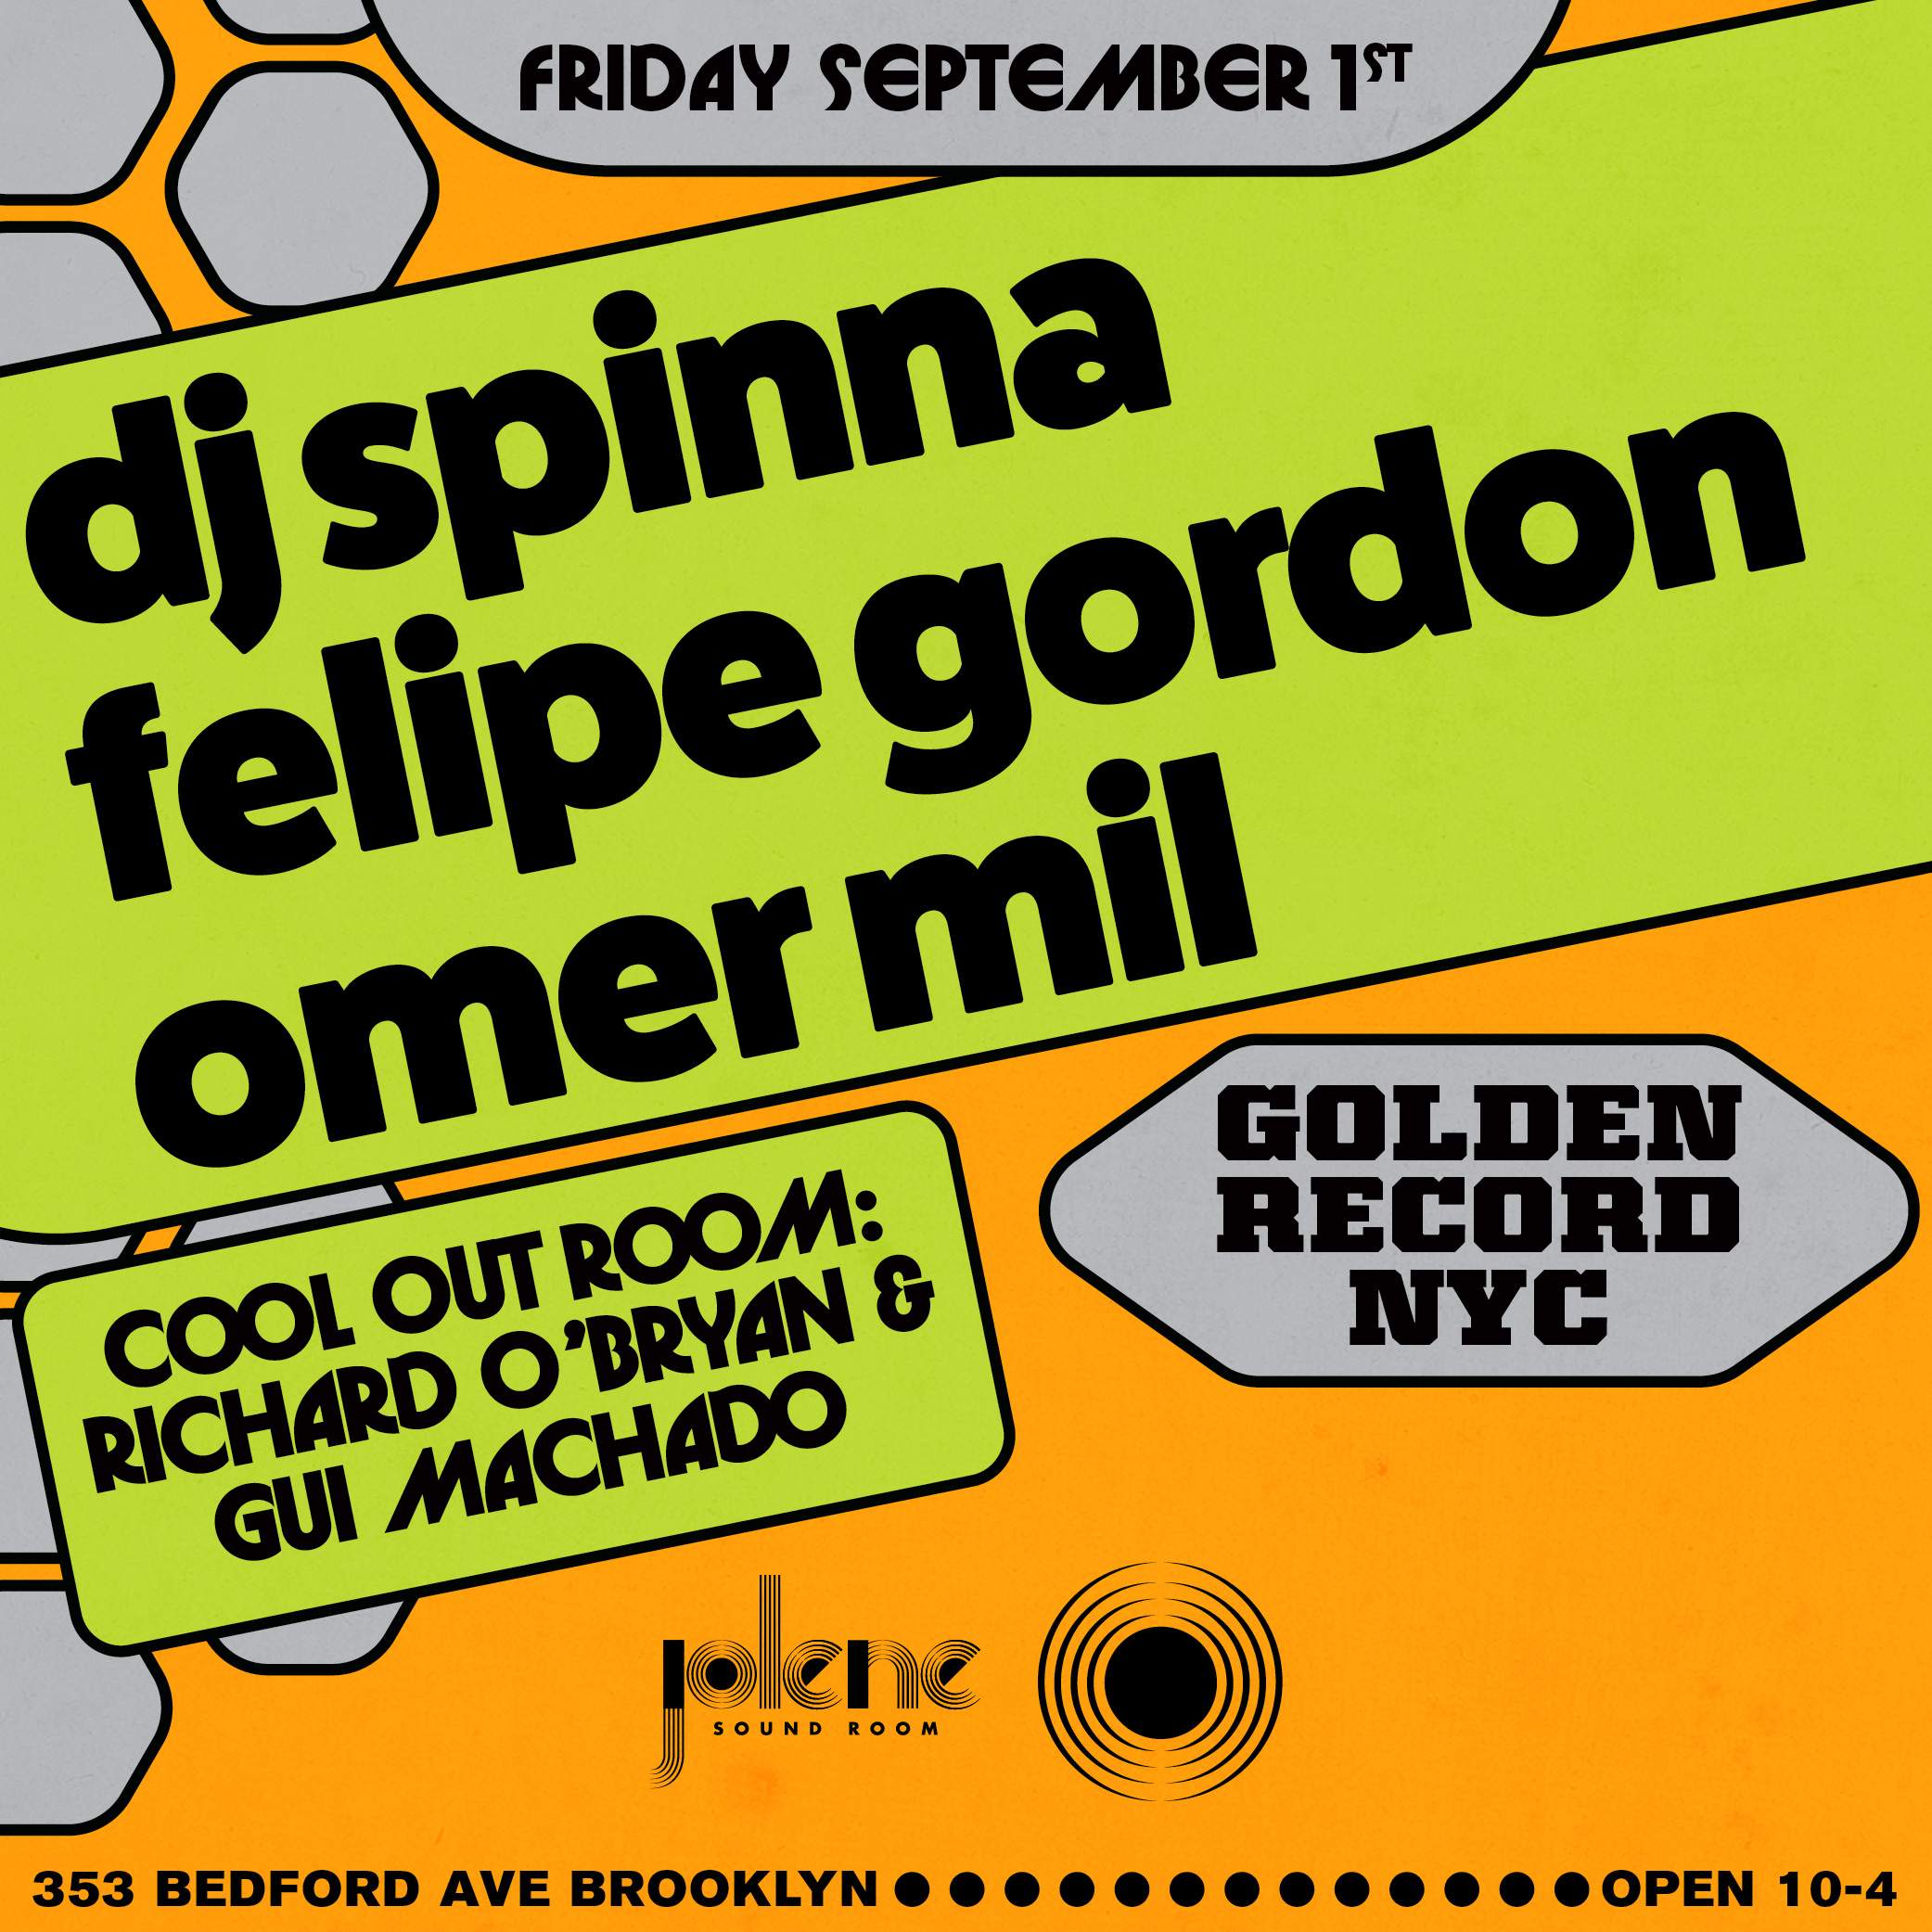 Golden Record NYC: DJ Spinna, Felipe Gordon, Omer Mil - フライヤー表